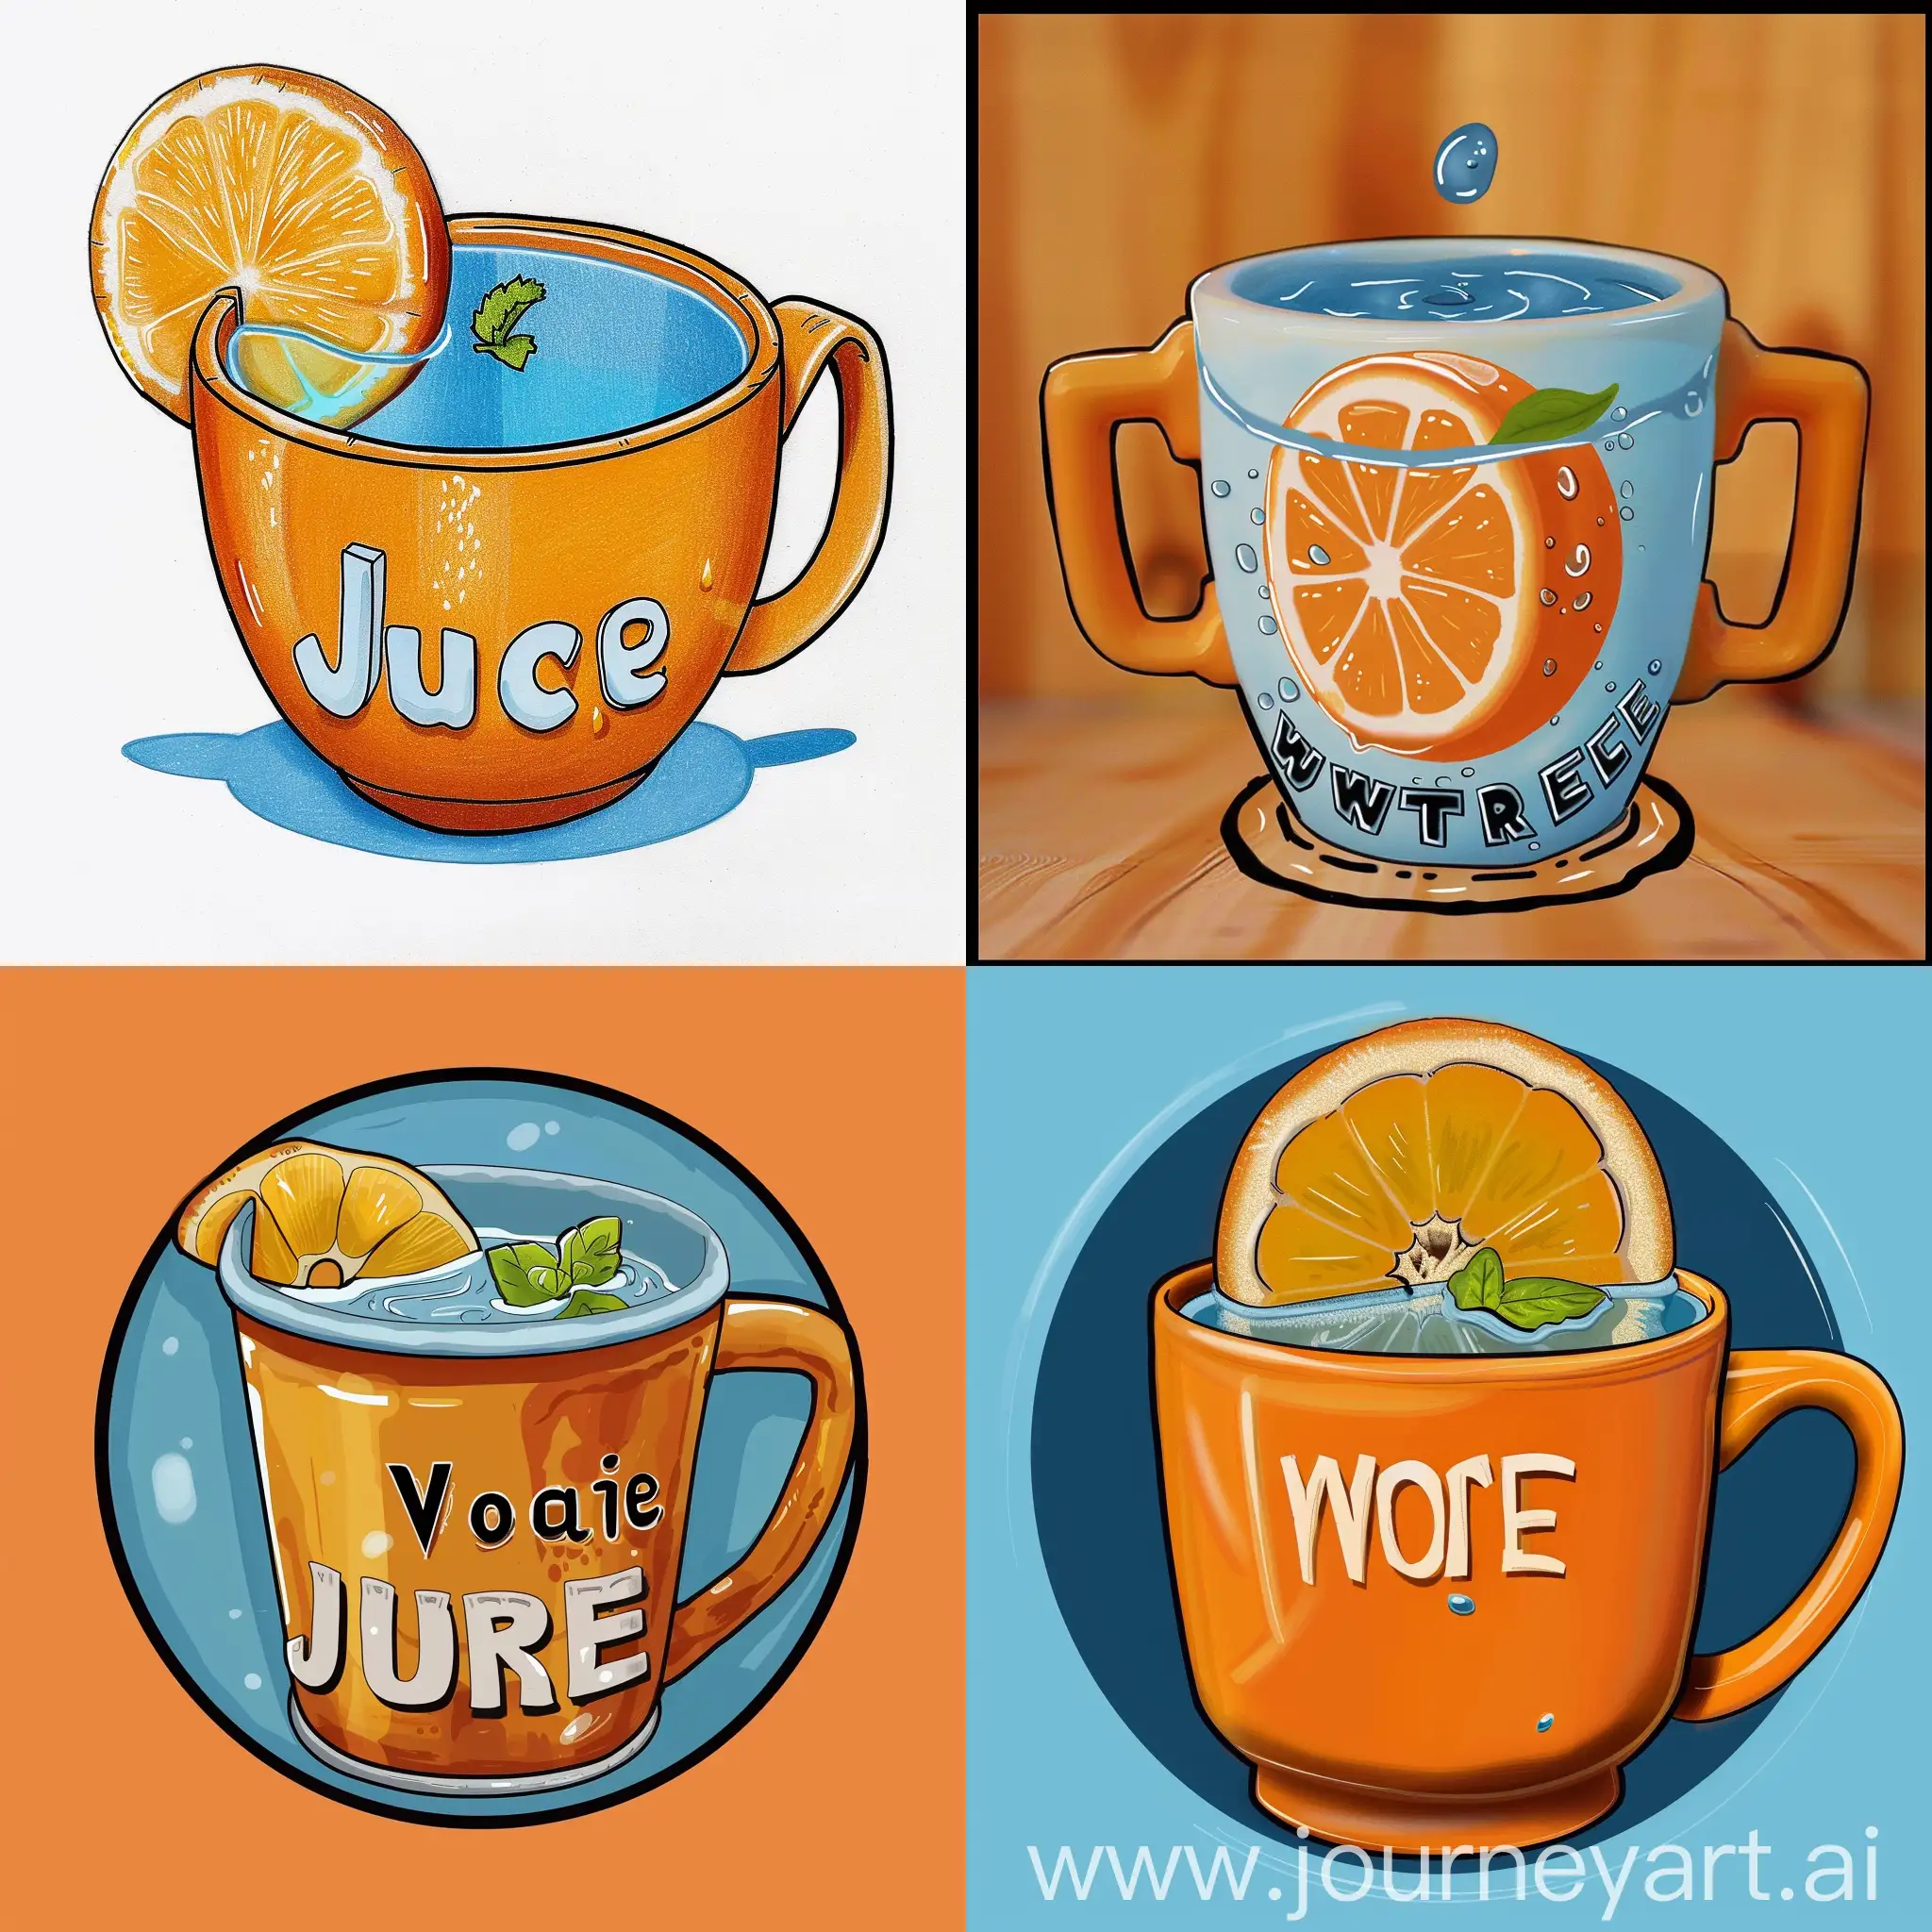 нарисуй такой же  стаканчик как на фото с ручками цвет картины  оранжевый добавь дольку апельсина замени слово woter на  juce